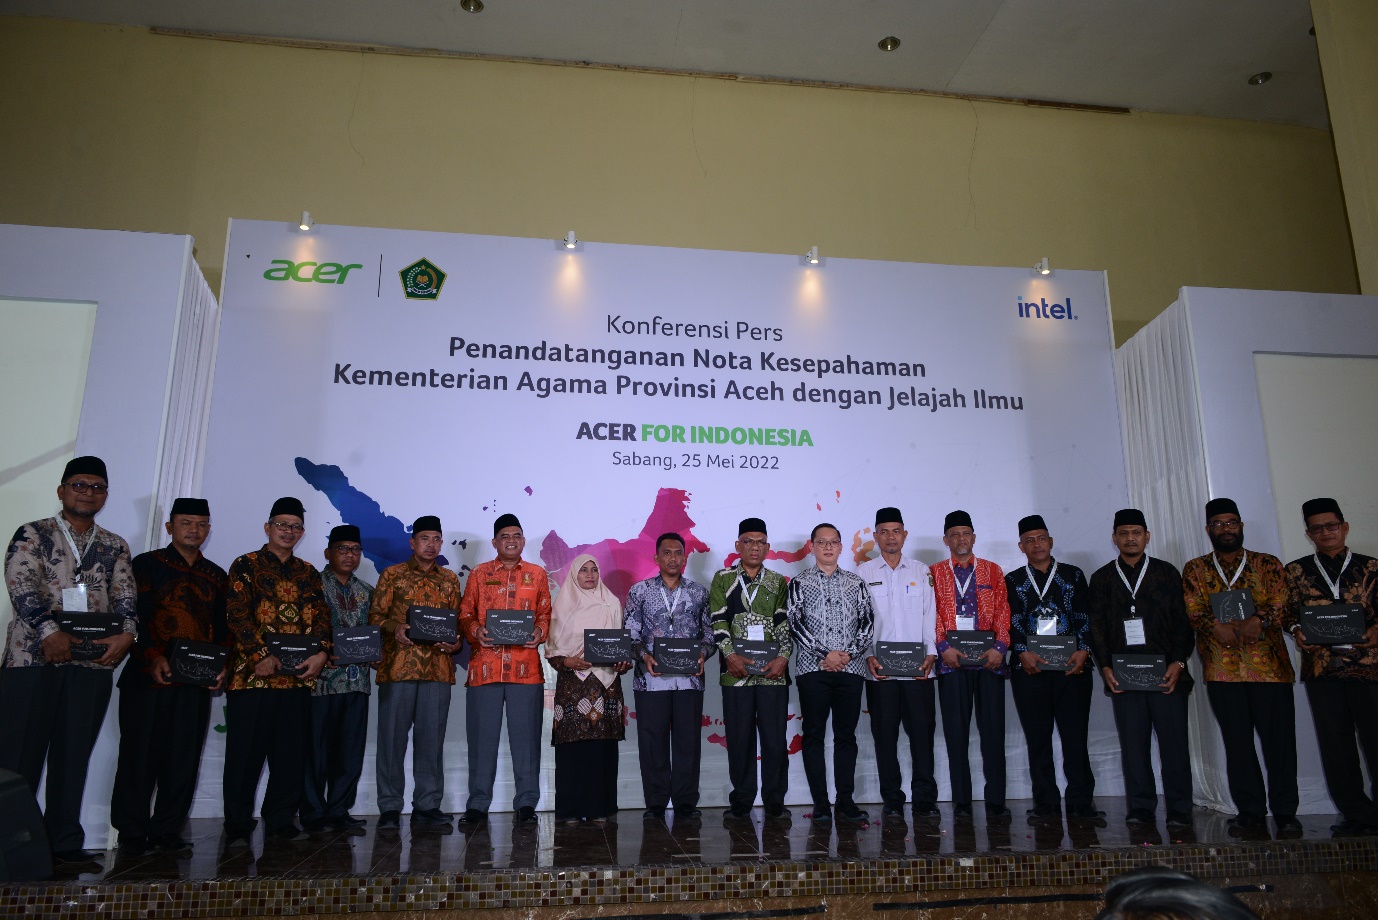 Foto Bersama dalam Agenda Konferensi Pers Penandatanganan Nota Kesepahaman Kementerian Agama Provinsi Aceh dengan Jelajah Ilmu